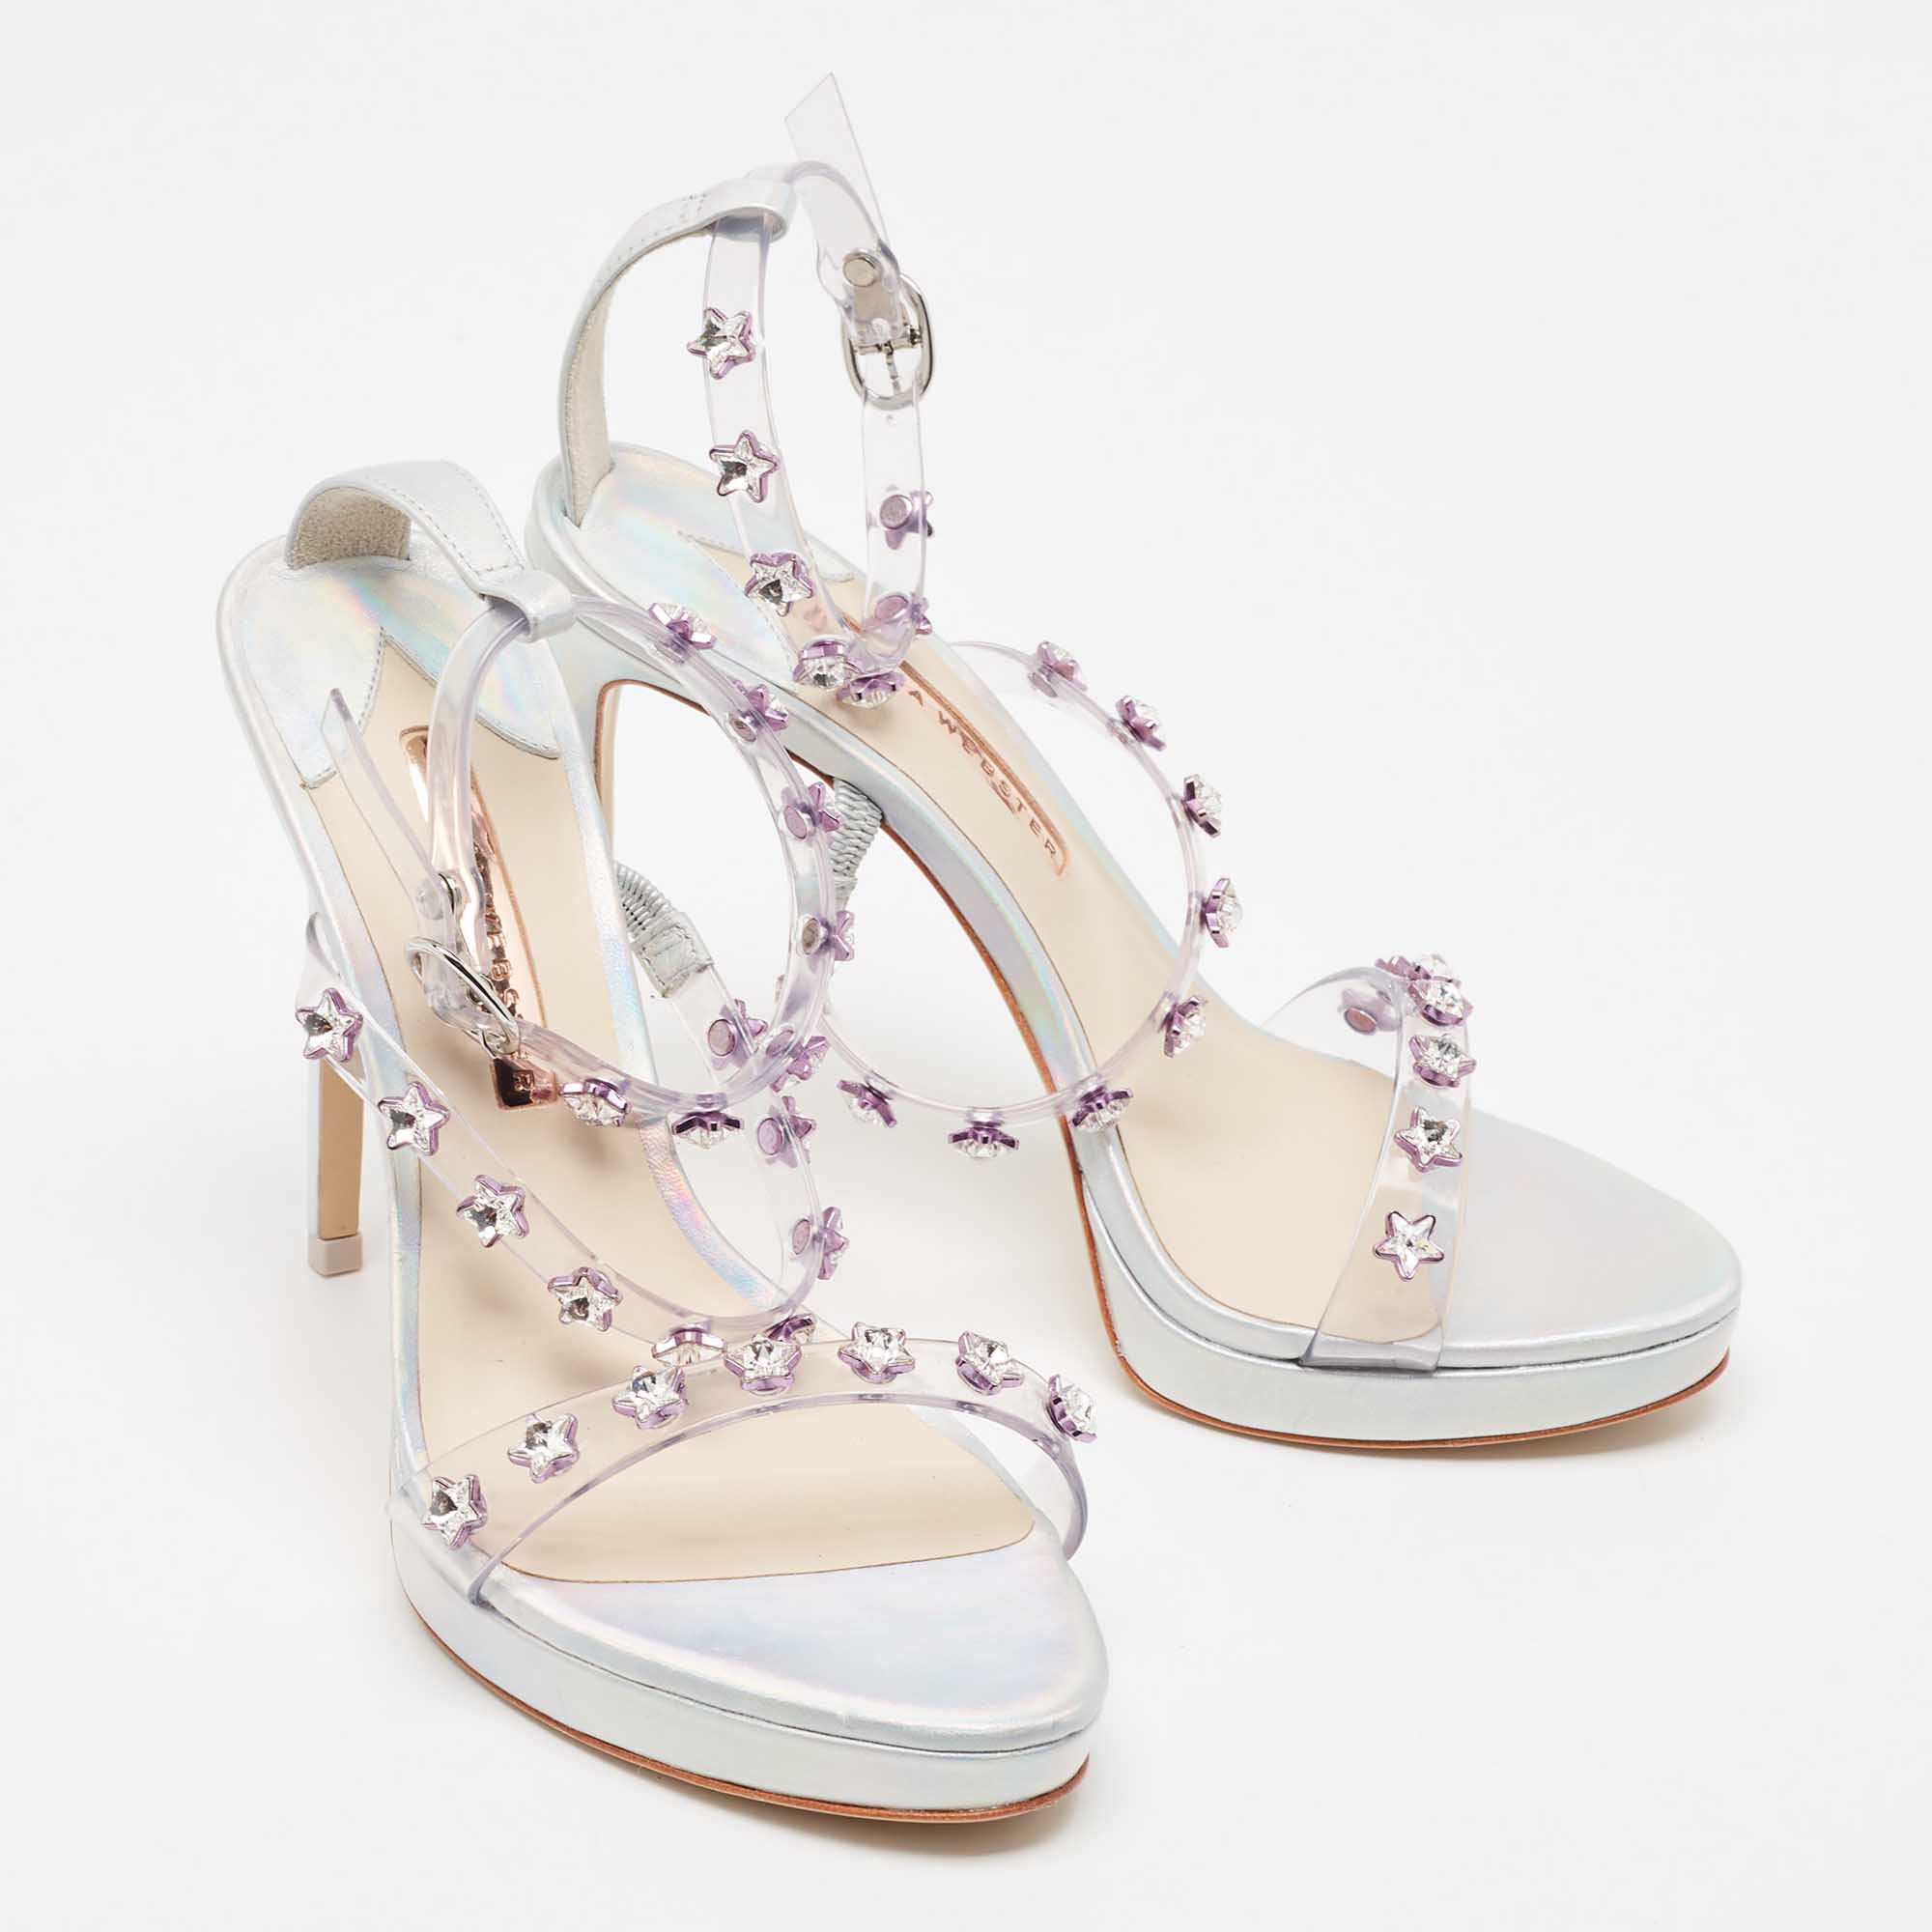 Sophia Webster Silver Holographic Leather And PVC Dina Gem Platform Sandals Size 39